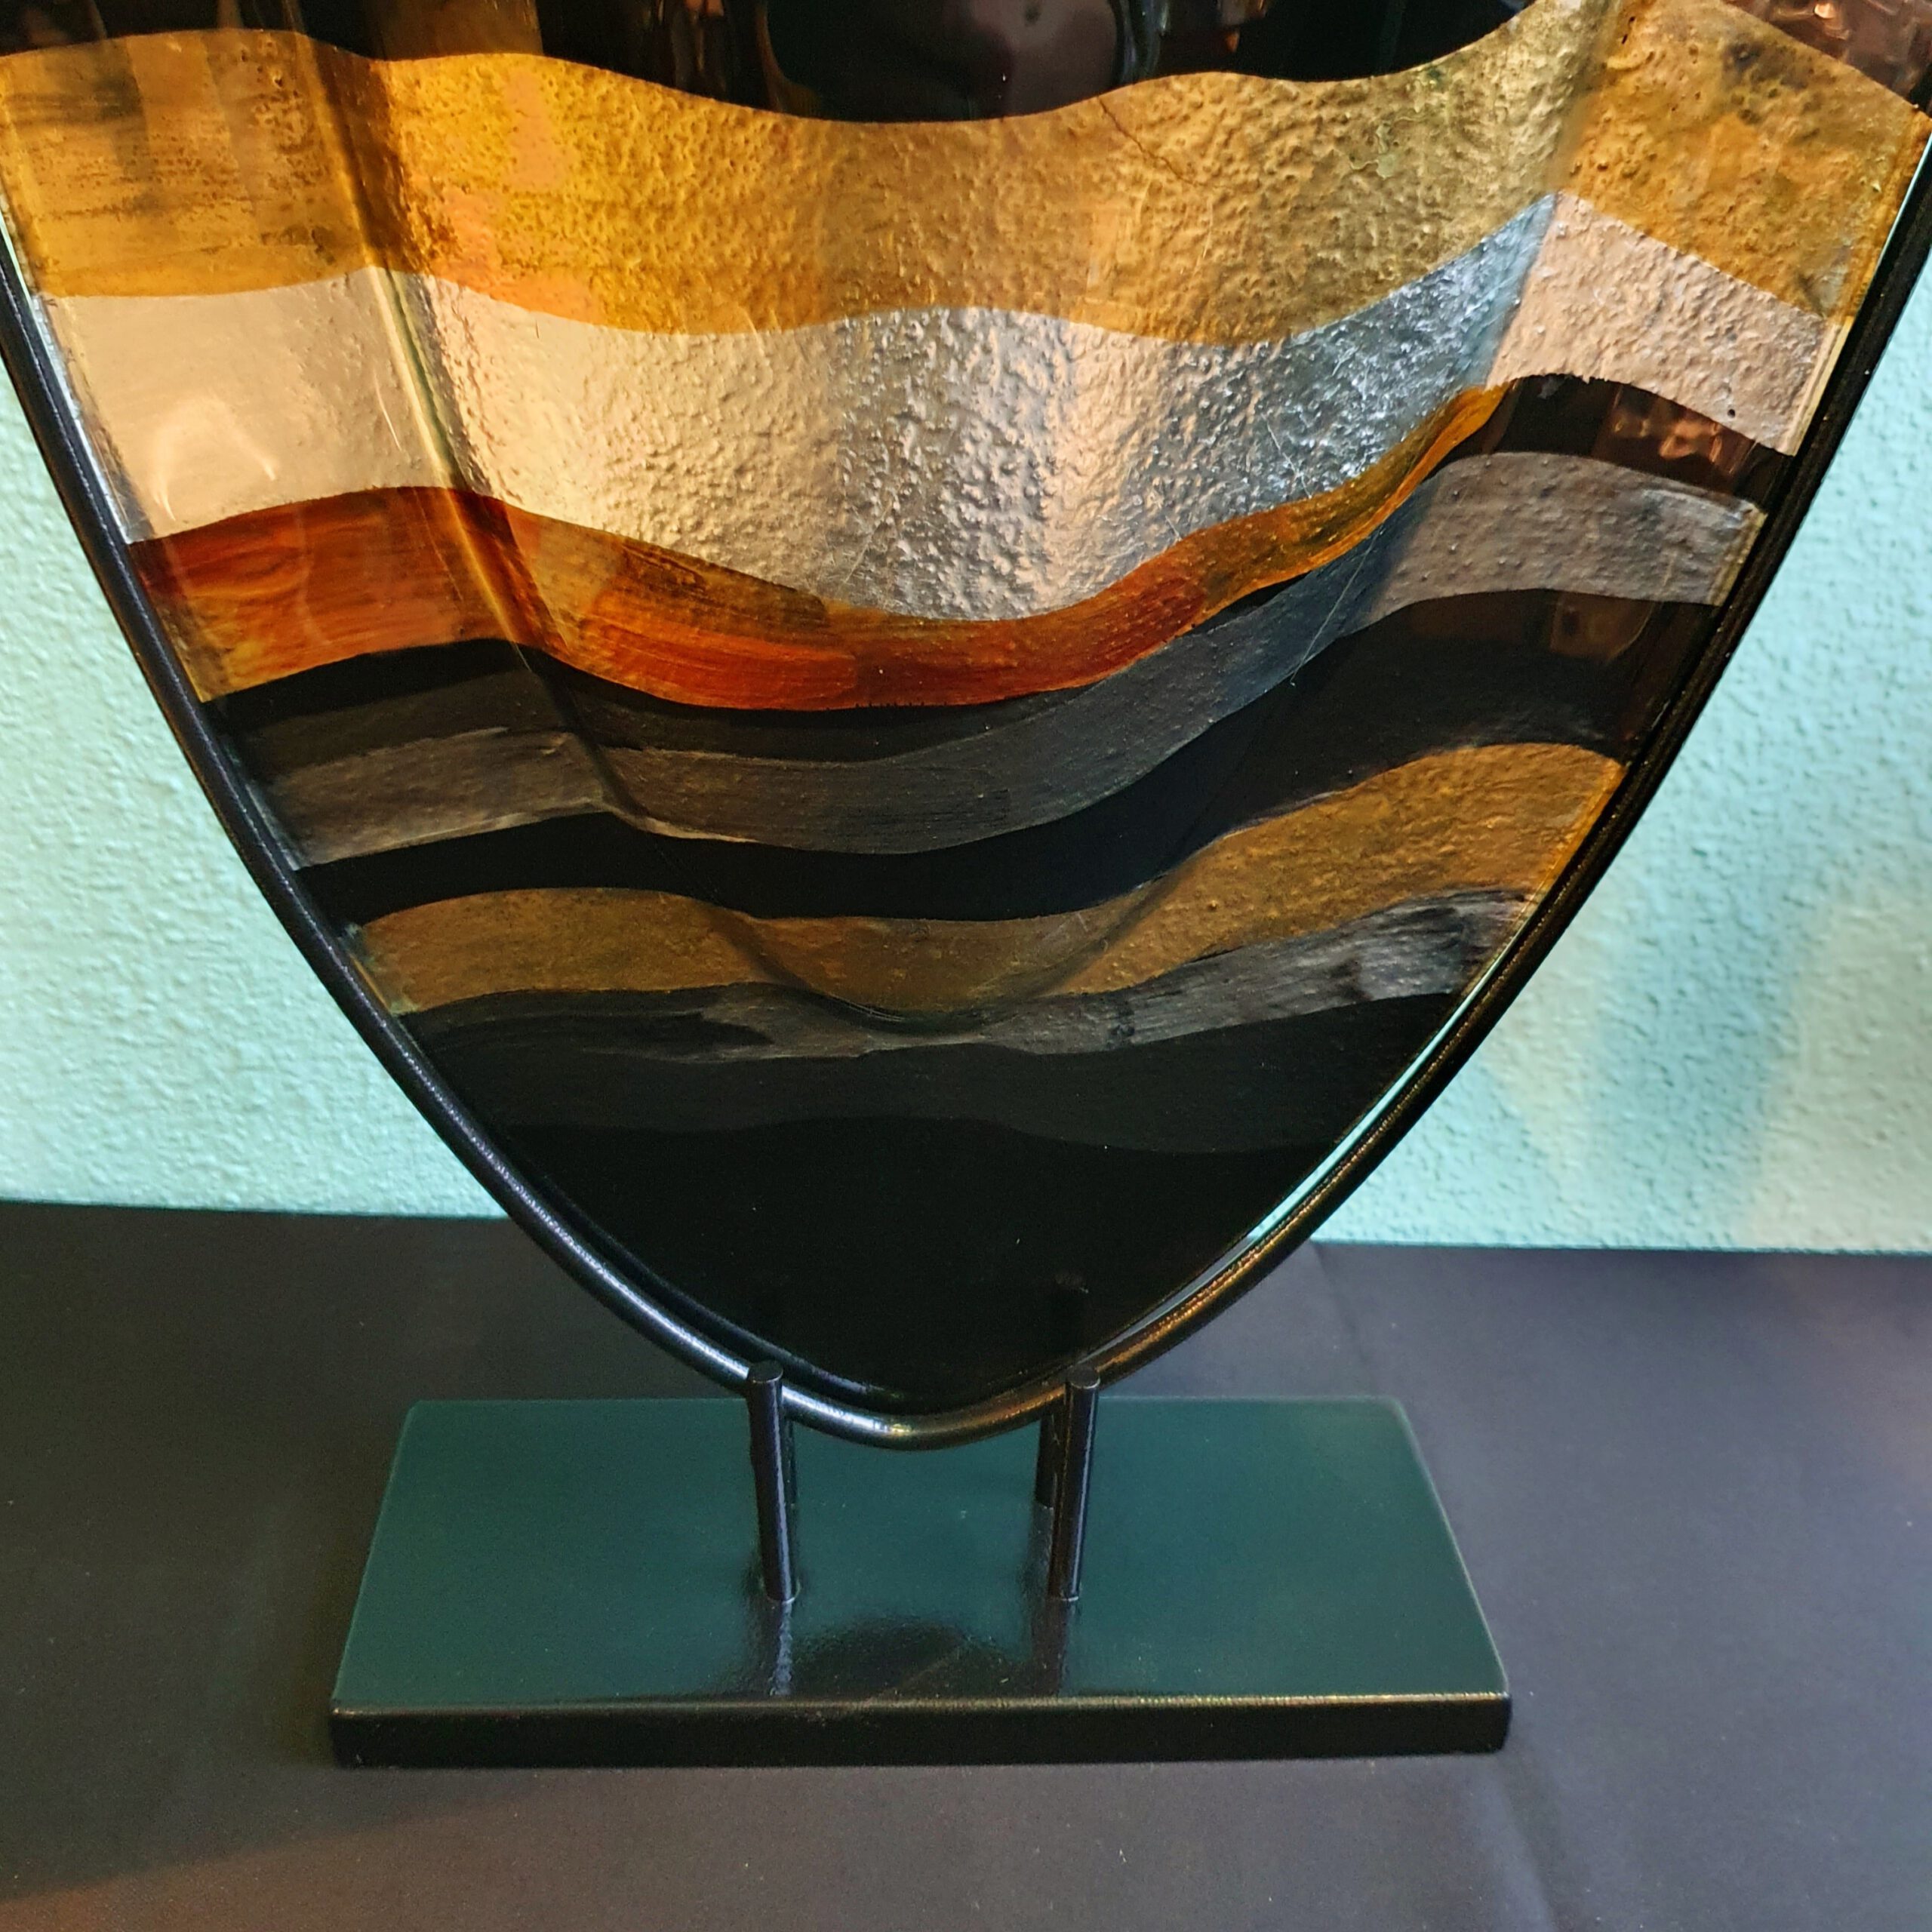 motief Ongewijzigd tekort Glaskunst hoge vaas van gekleurd glas op een metalen voet "Zonsondergang" -  Bijzondergemaakt